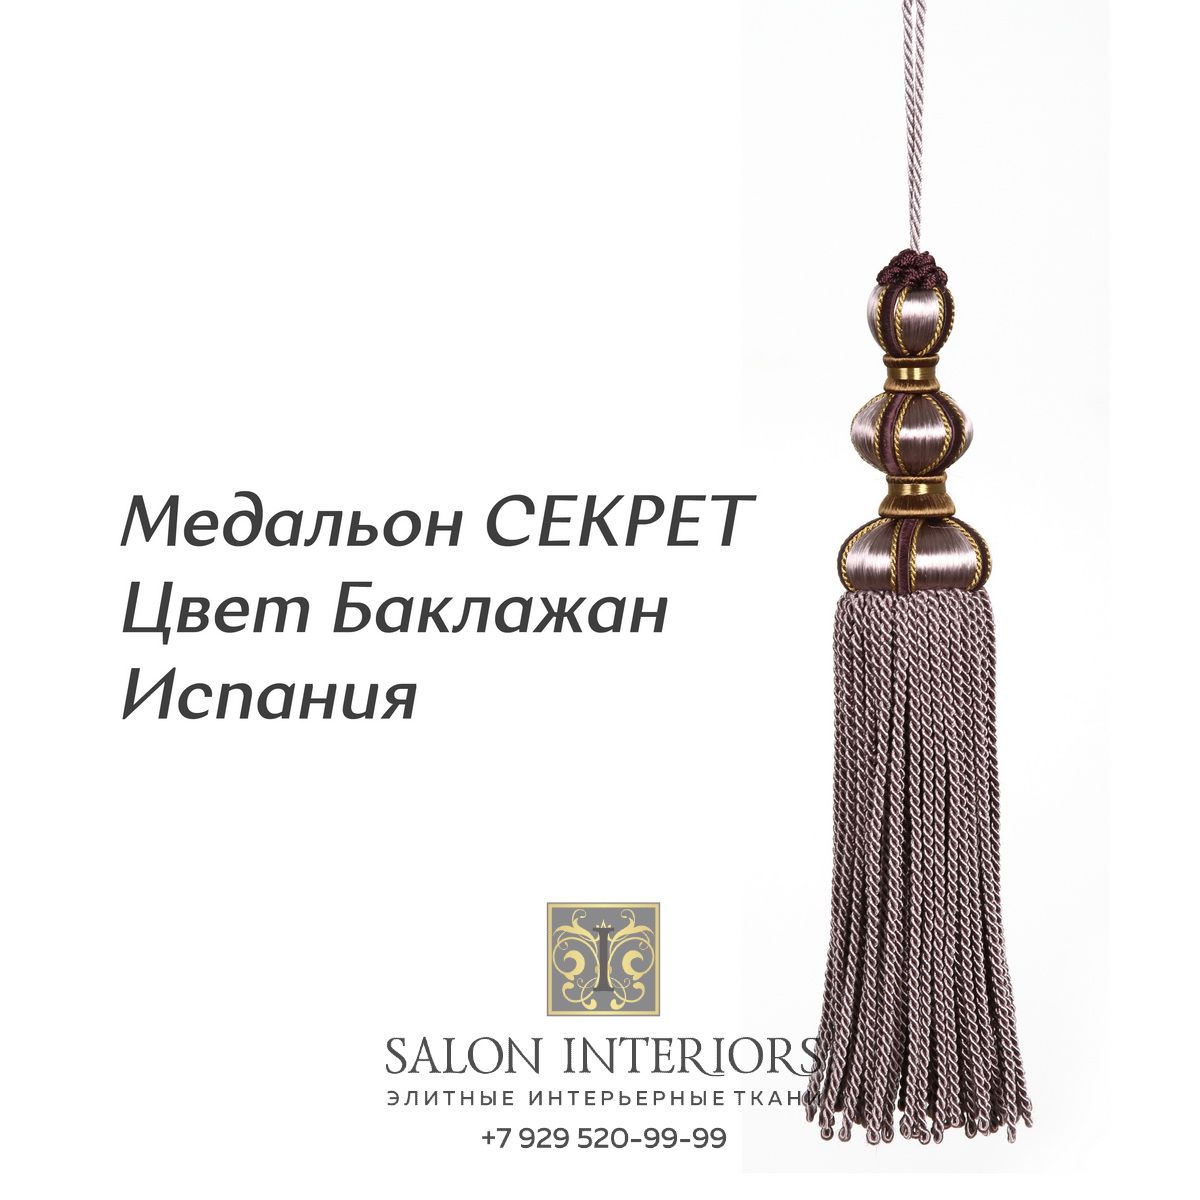 Медальон "СЕКРЕТ" Арт MK996A-11639 Цвет Баклажан разм.27см Испания